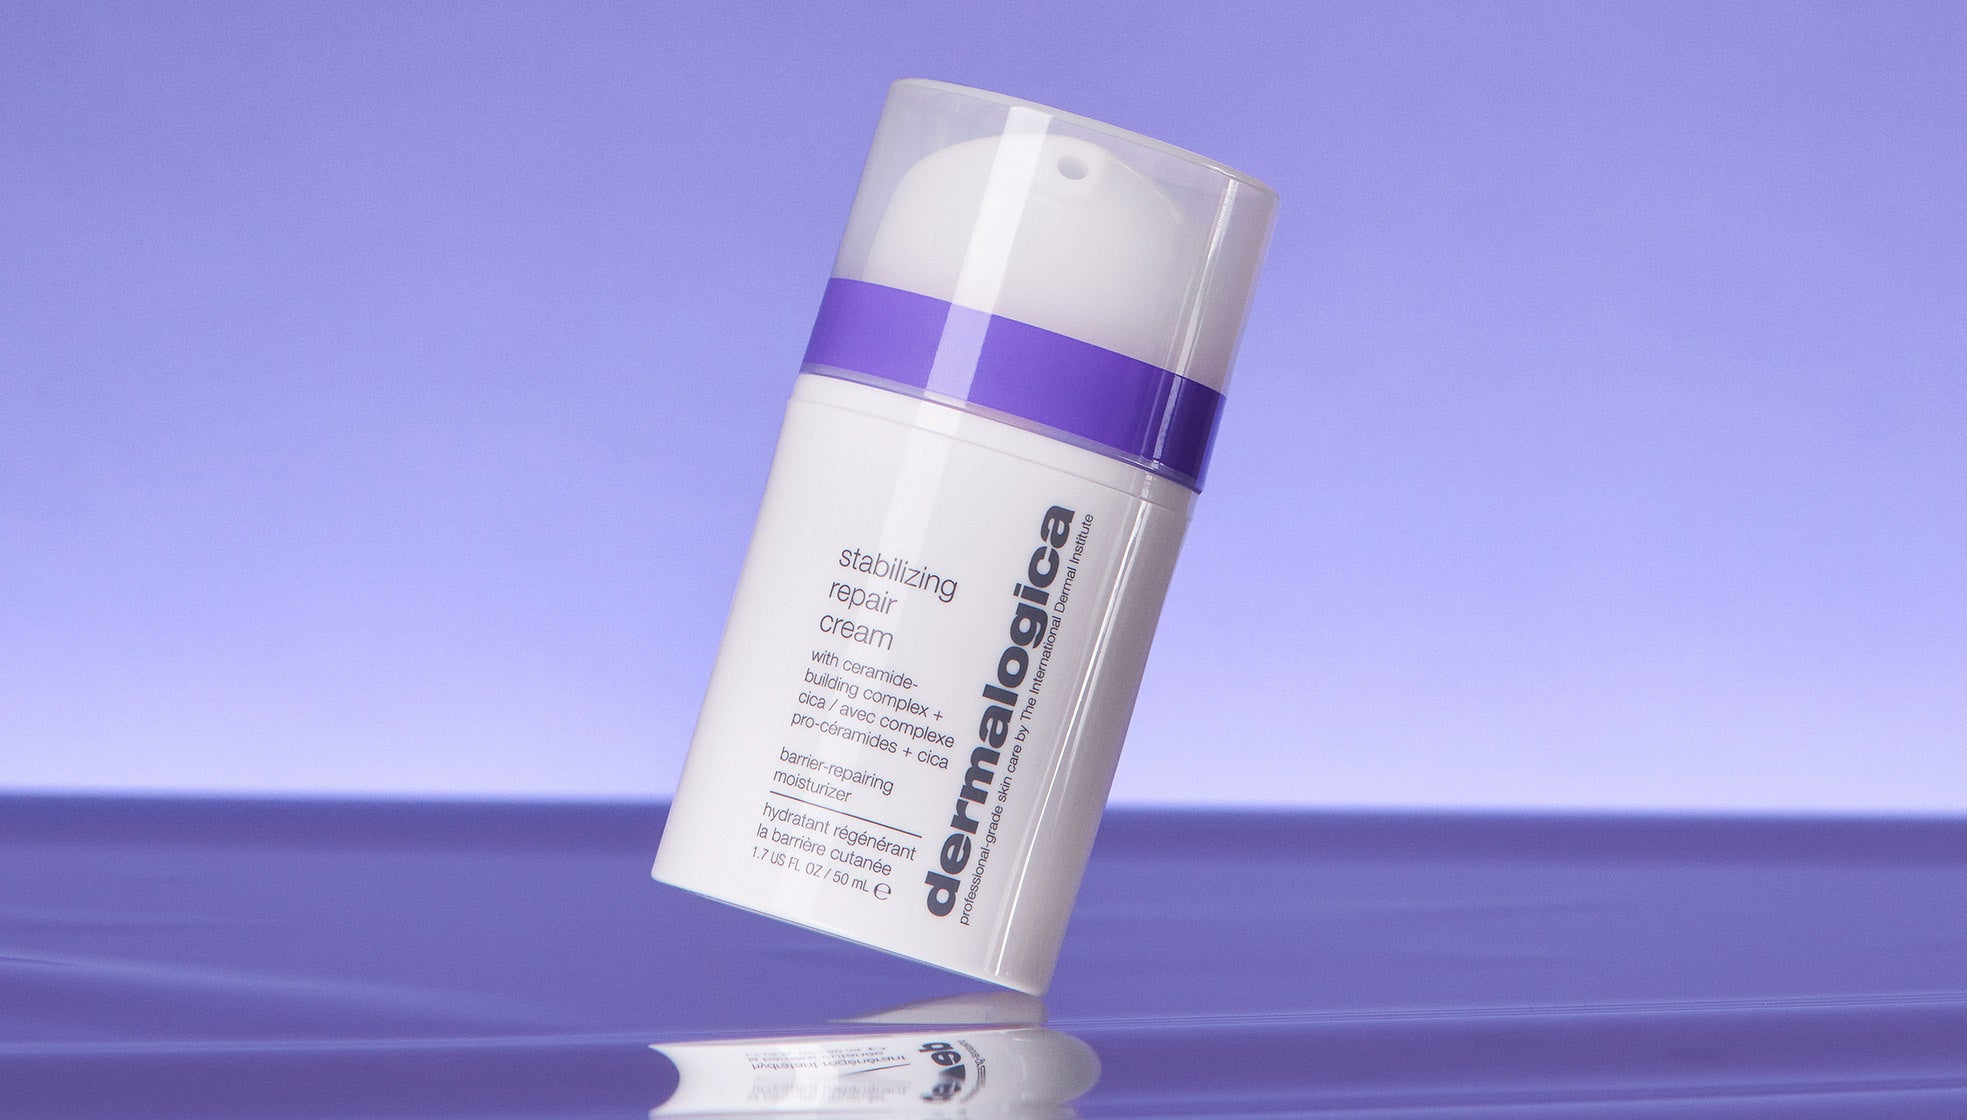 tilting stabilizing repair cream with purple background